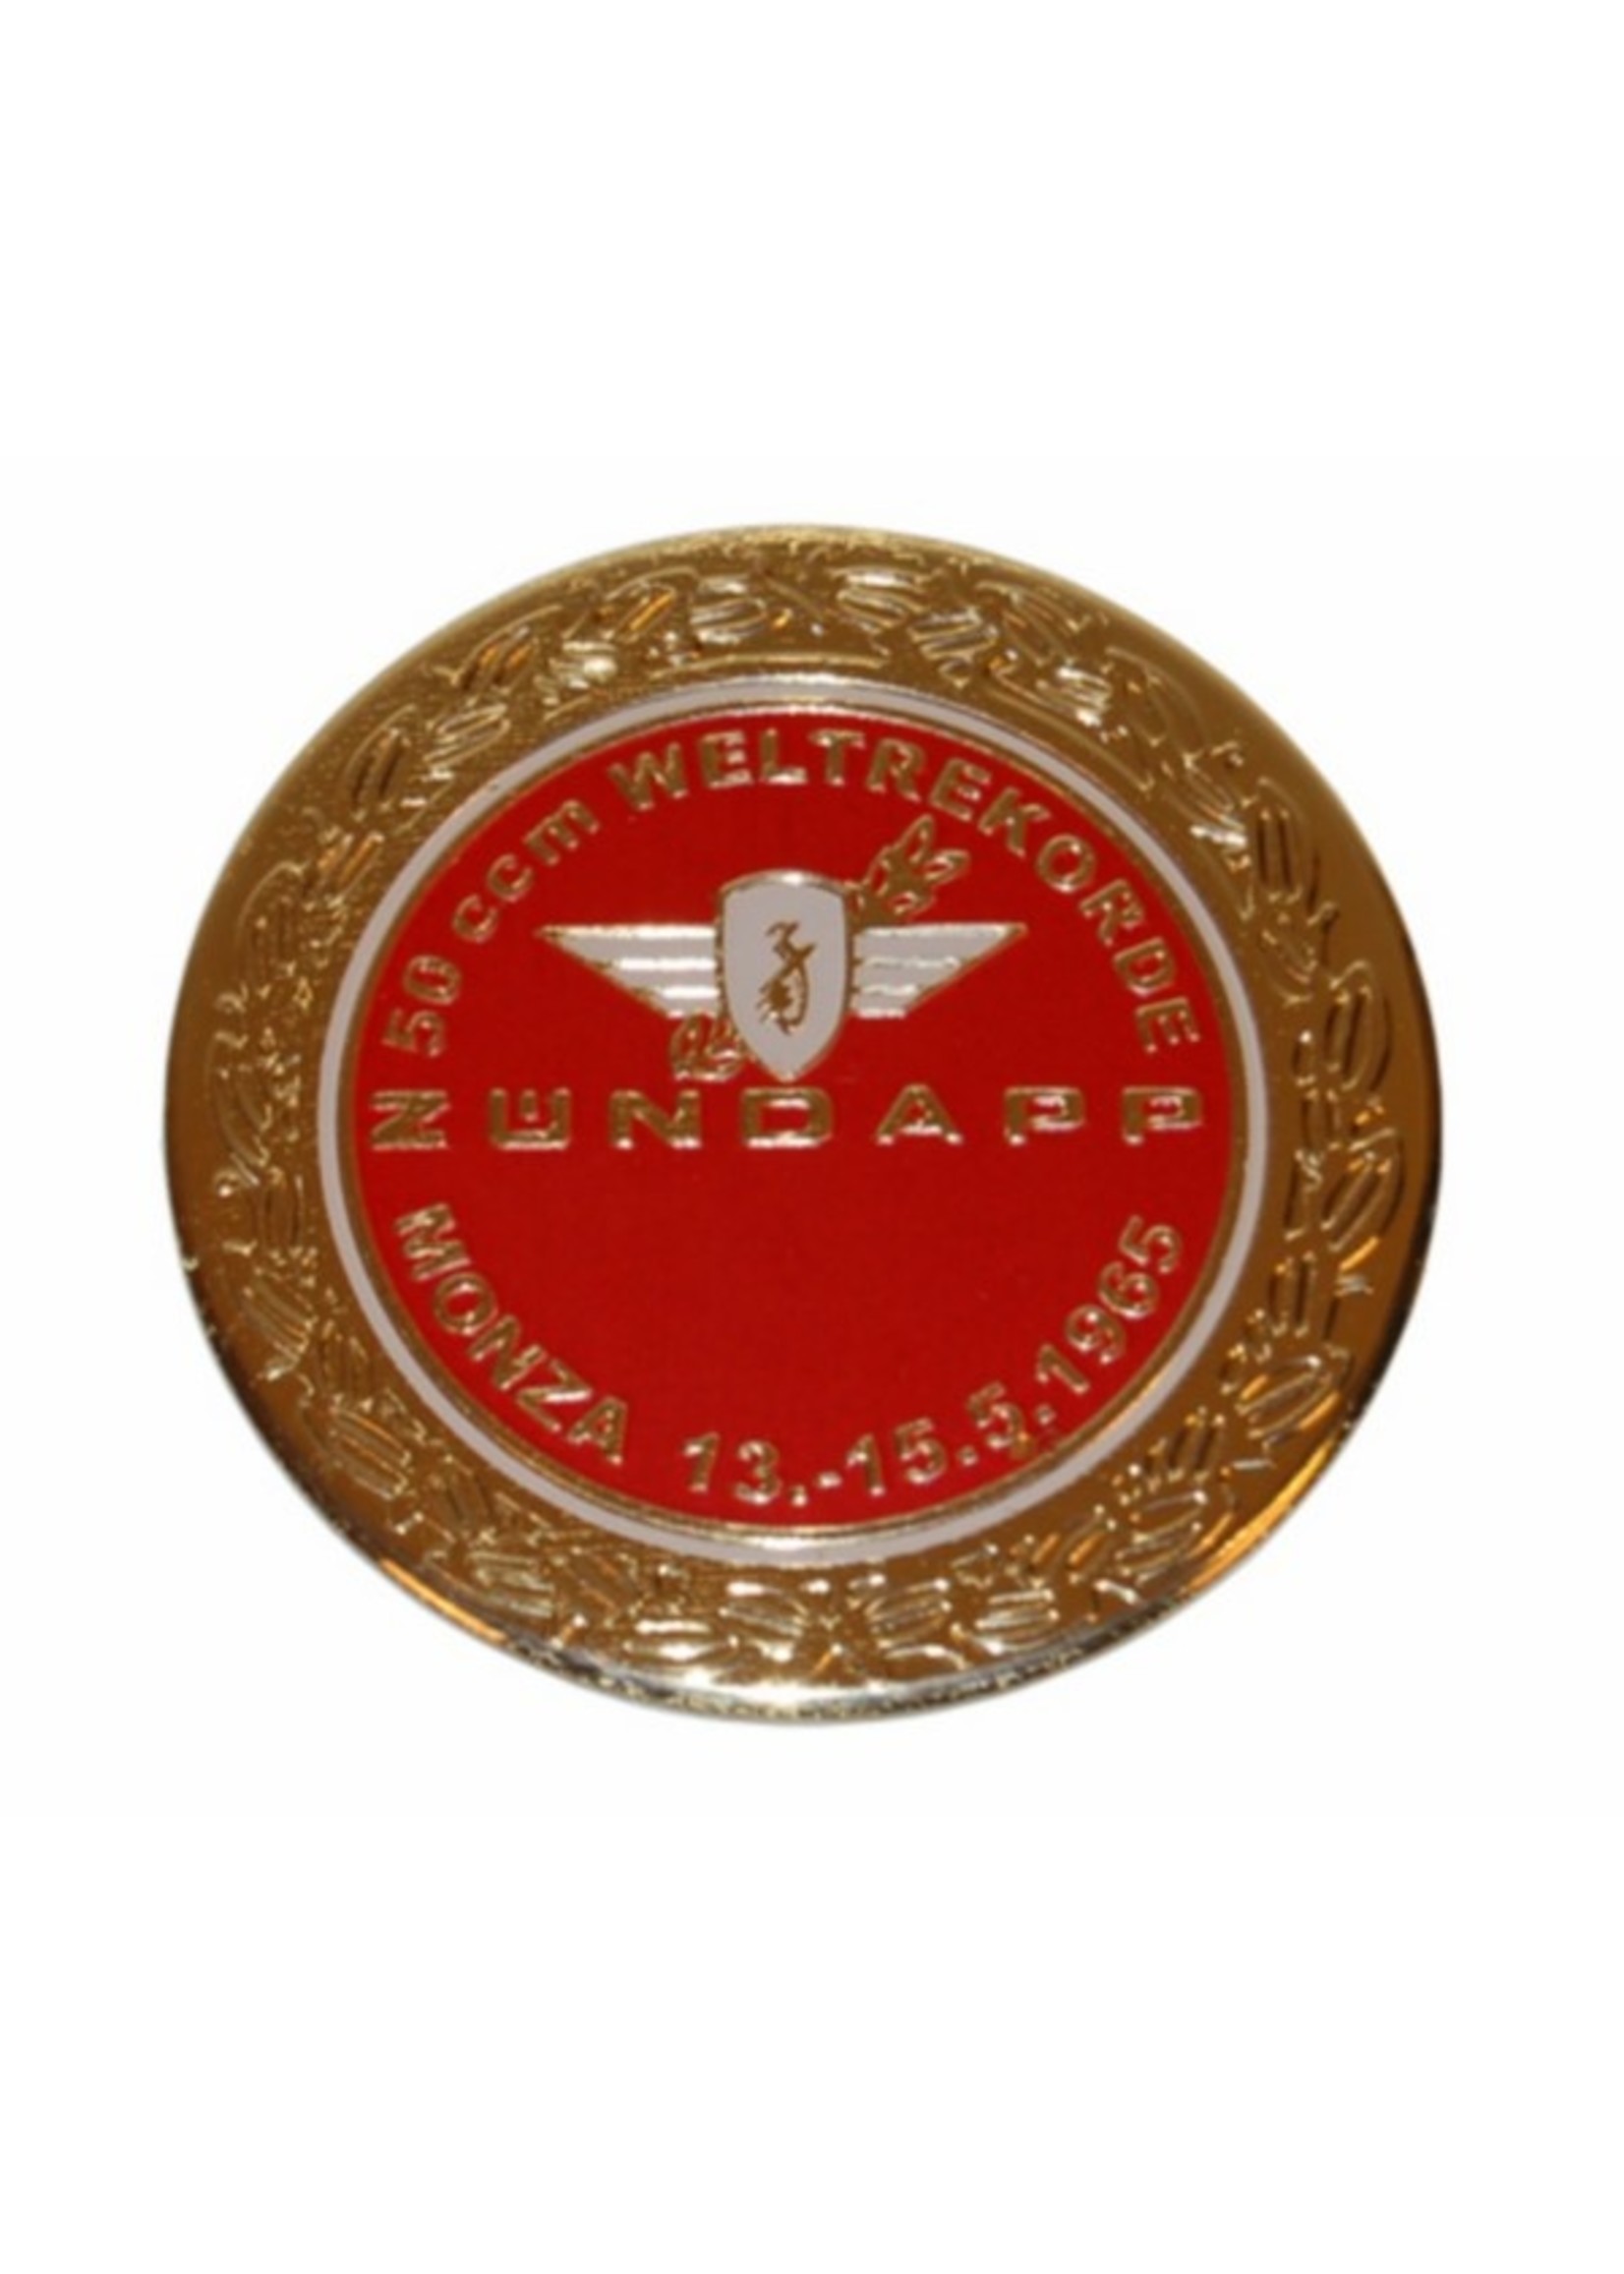 stickers sticker zundapp logo rond zundapp monza rood/goud z517-12.127/r